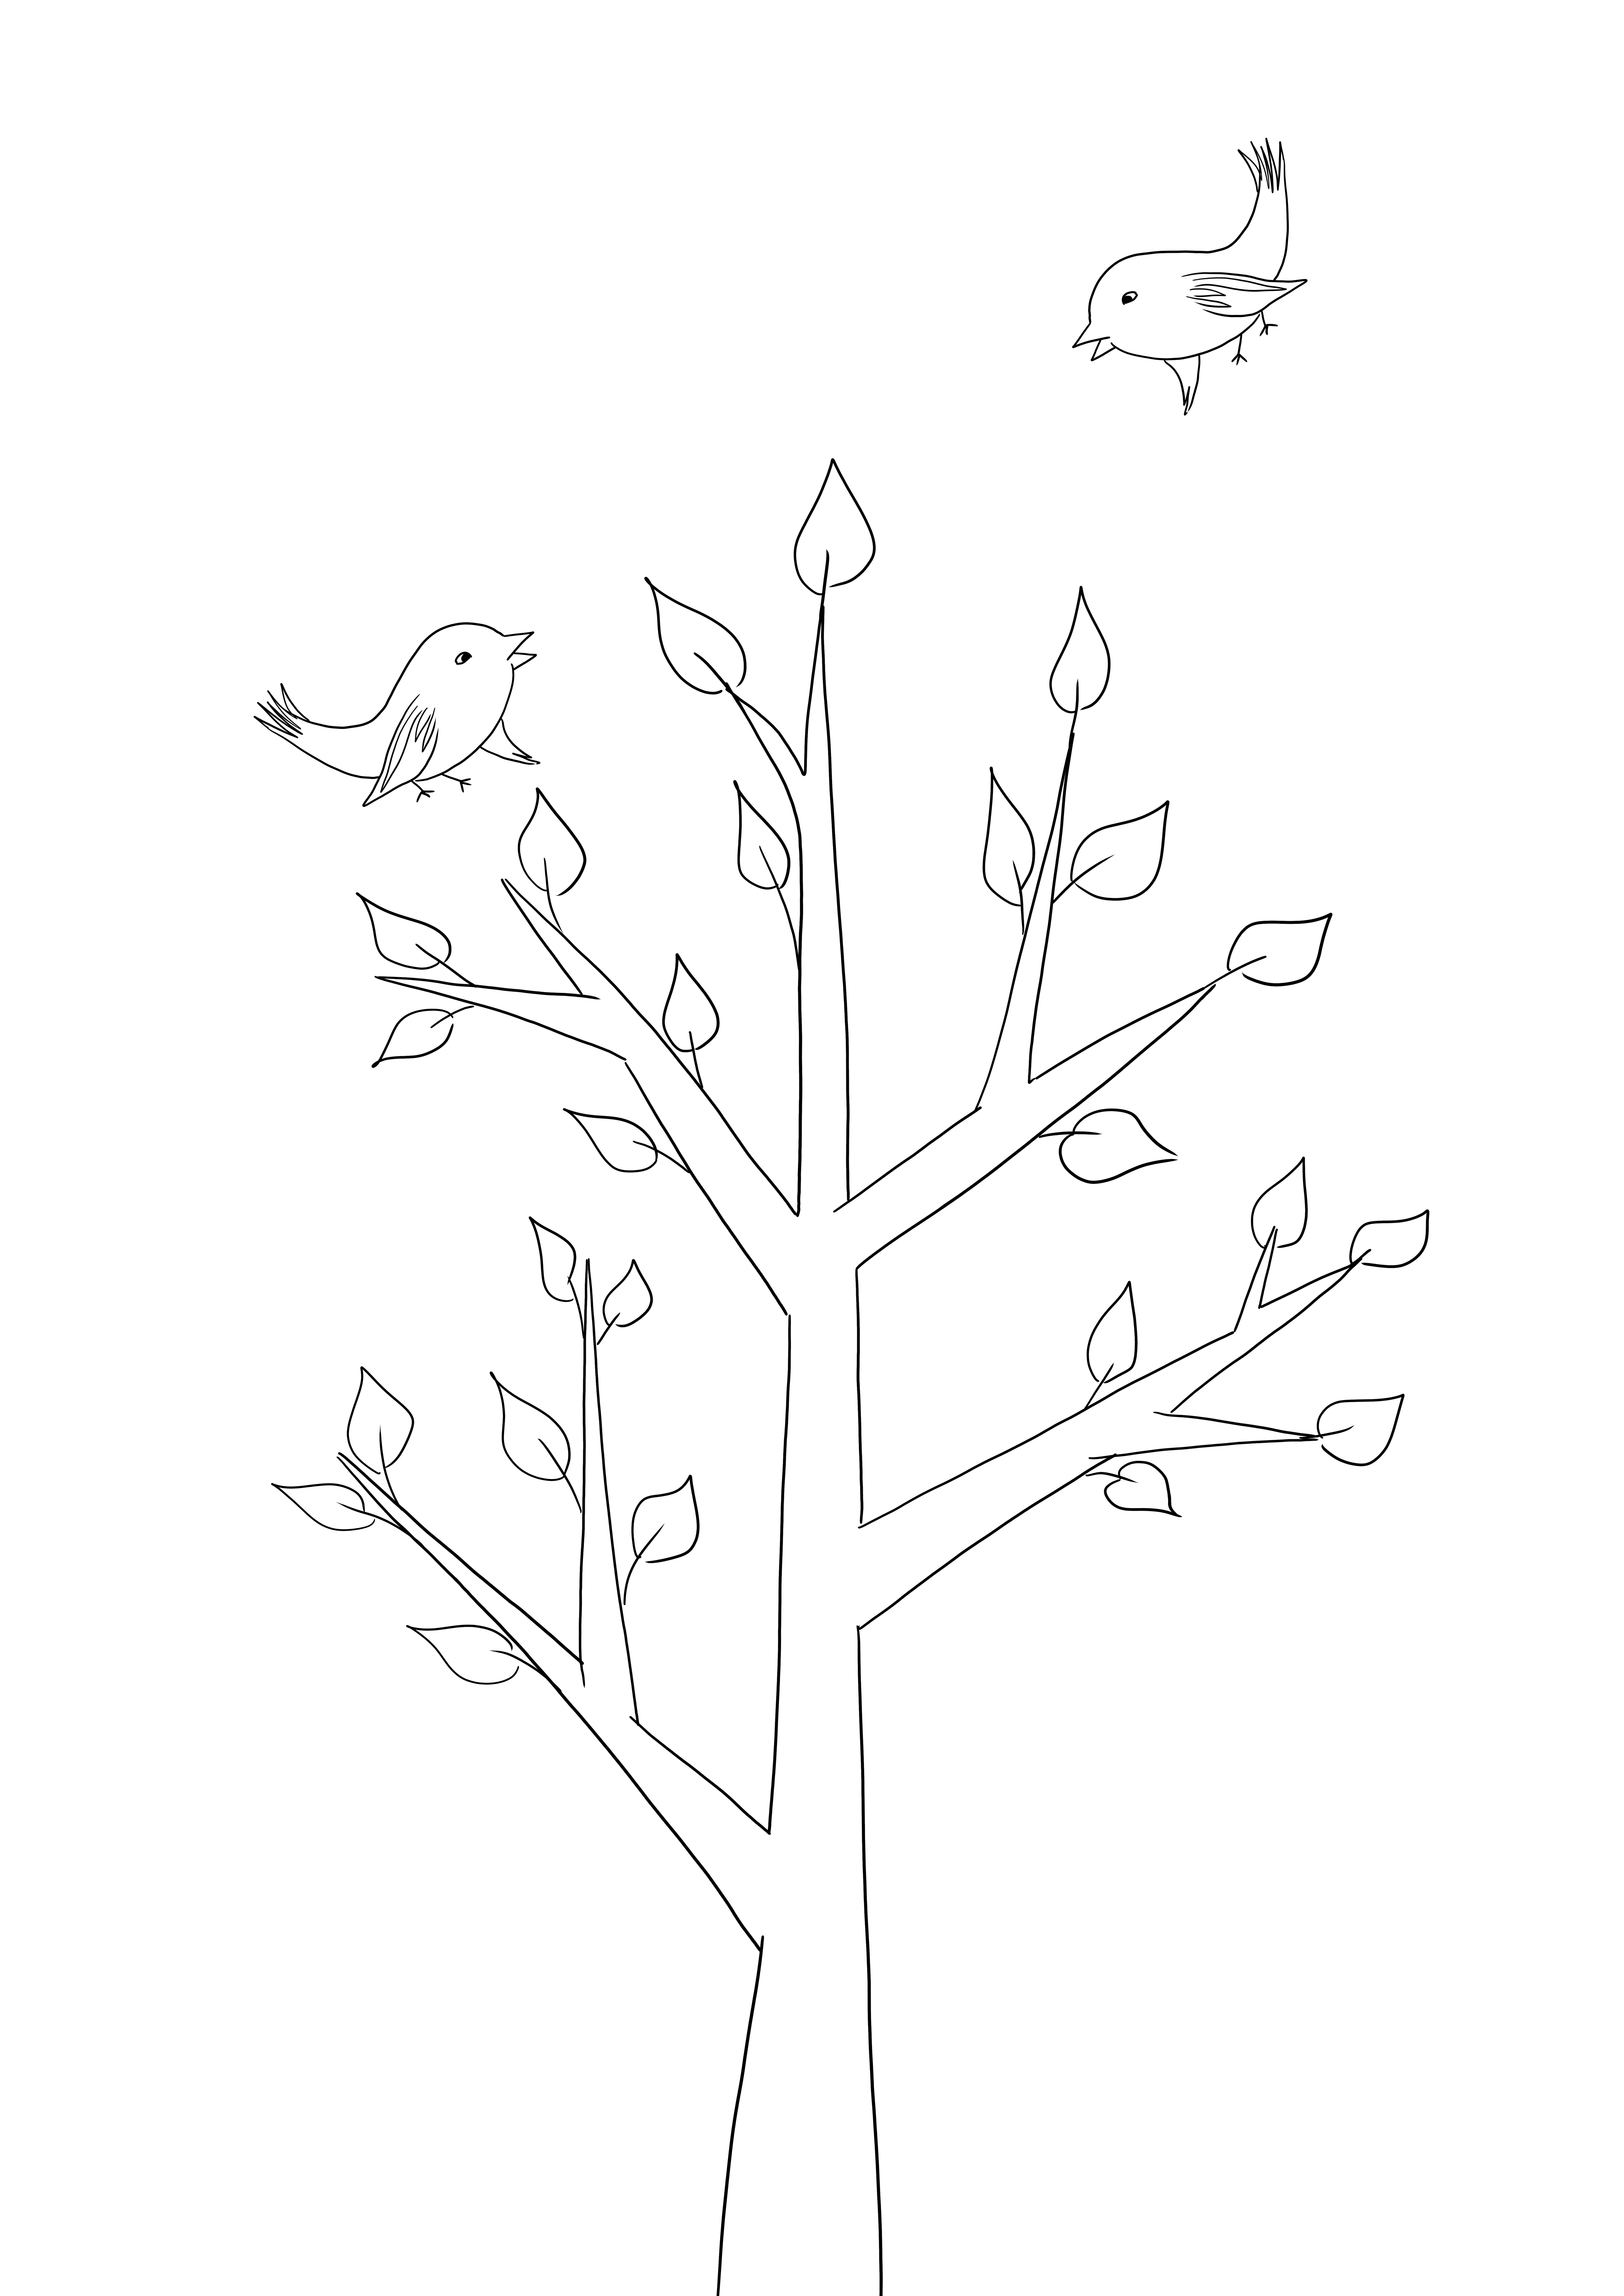 İlkbahar mevsiminde bir ağacın basit boyama sayfası ücretsiz indir